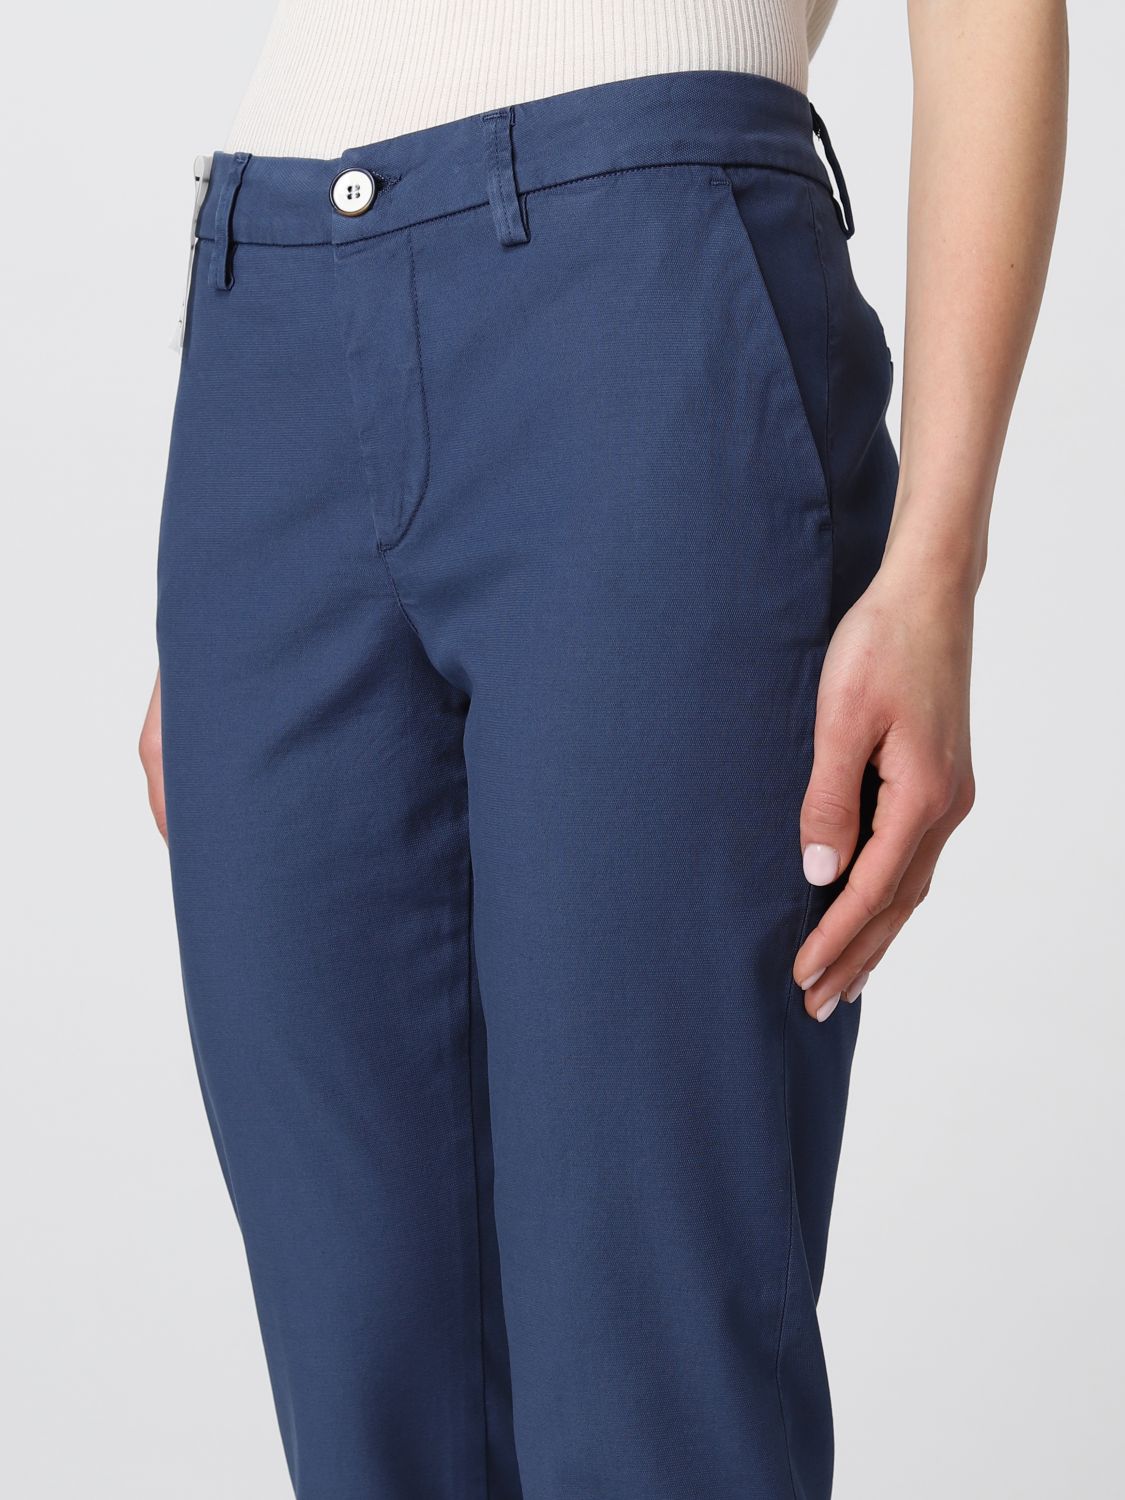 Pantalón Re-Hash: Pantalón mujer Re-hash azul oscuro 3